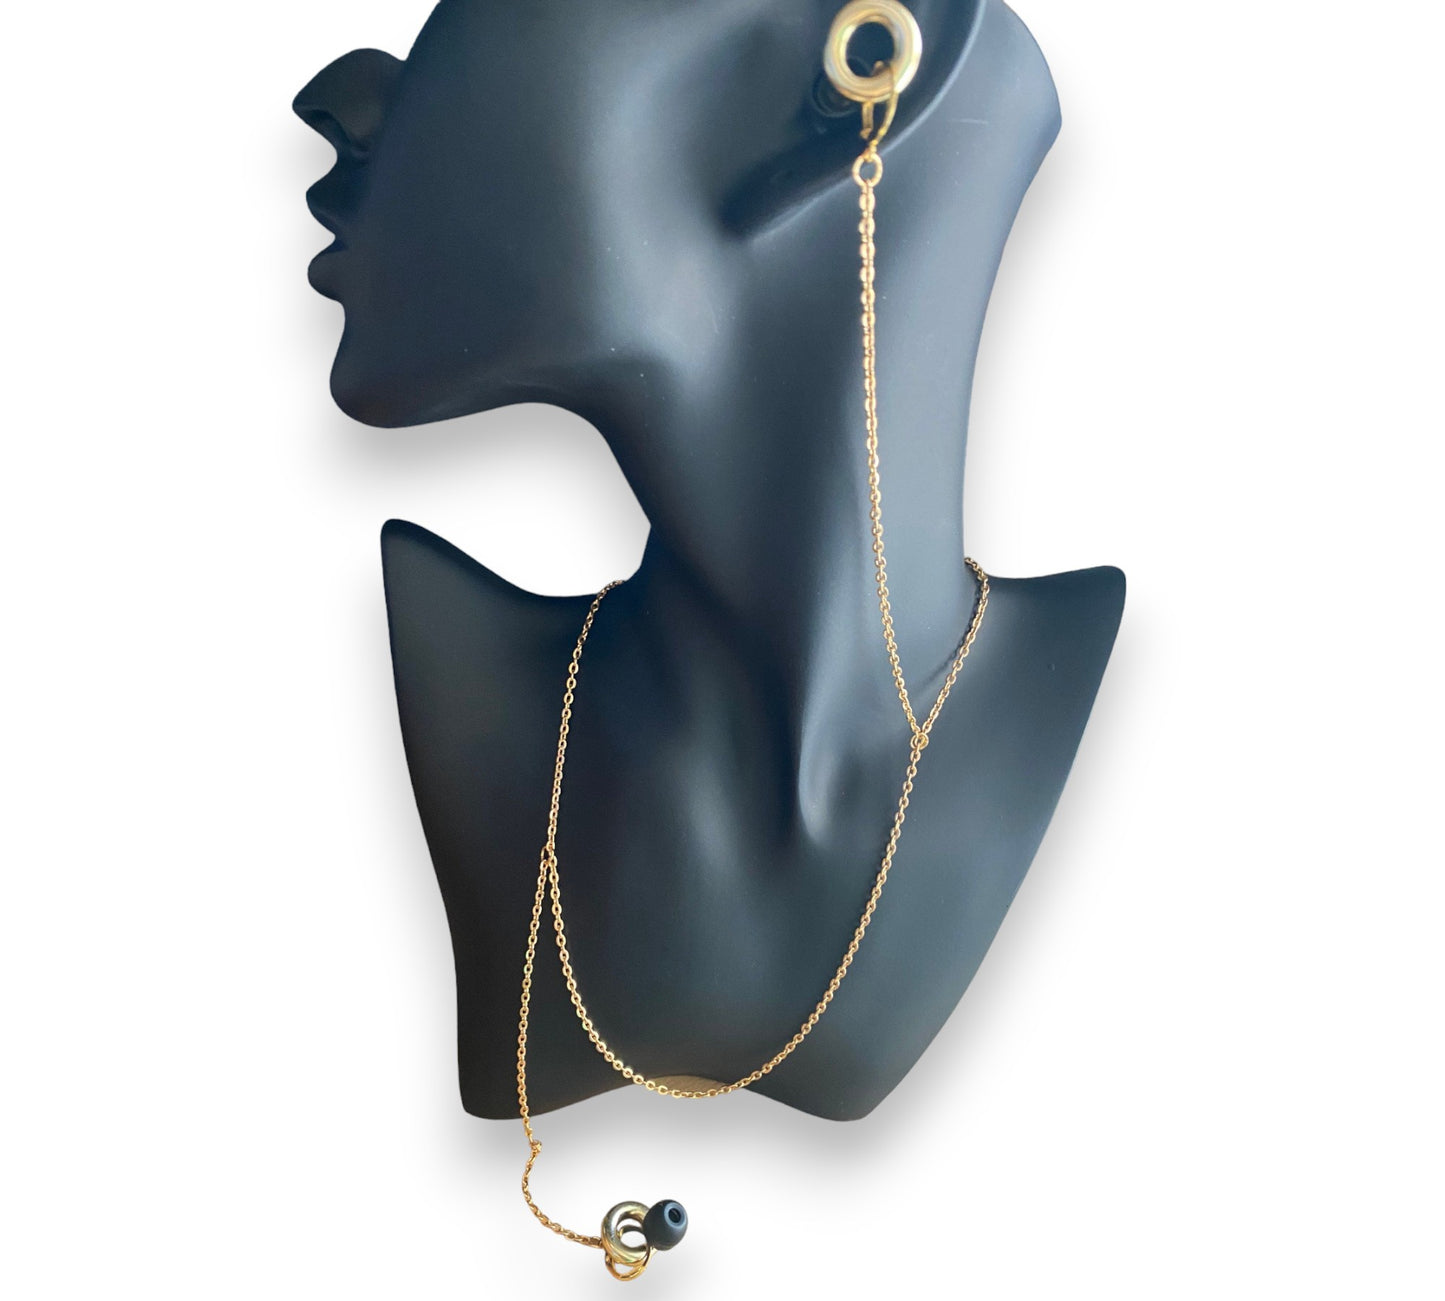 EarLink Necklace